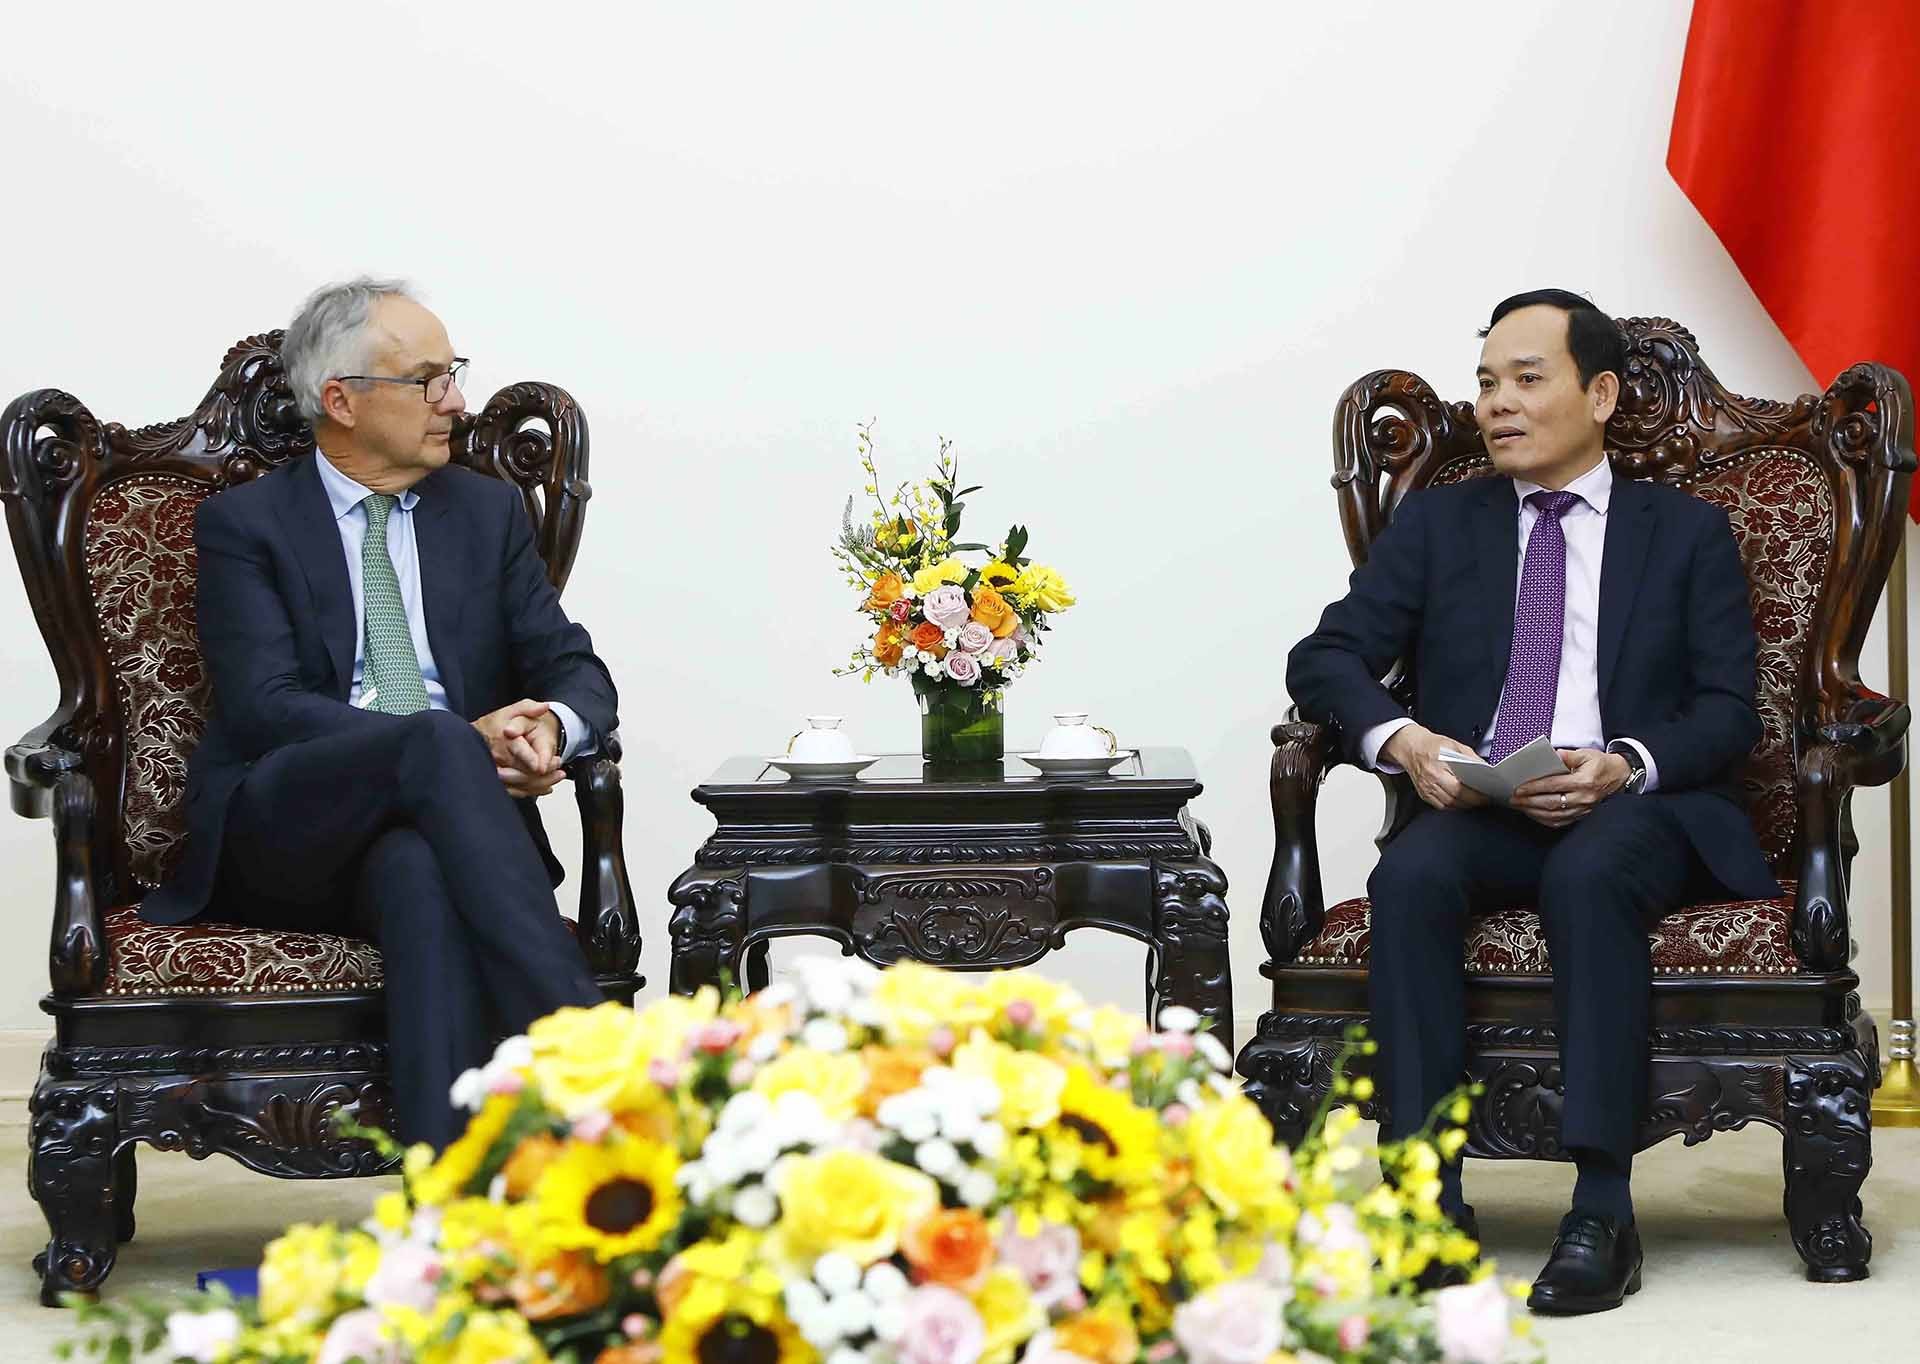 Phó Thủ tướng Trần Lưu Quang tiếp Đặc phái viên về Đông Nam Á của Chính phủ Australia Nicholas Moore. (Nguồn: TTXVN)